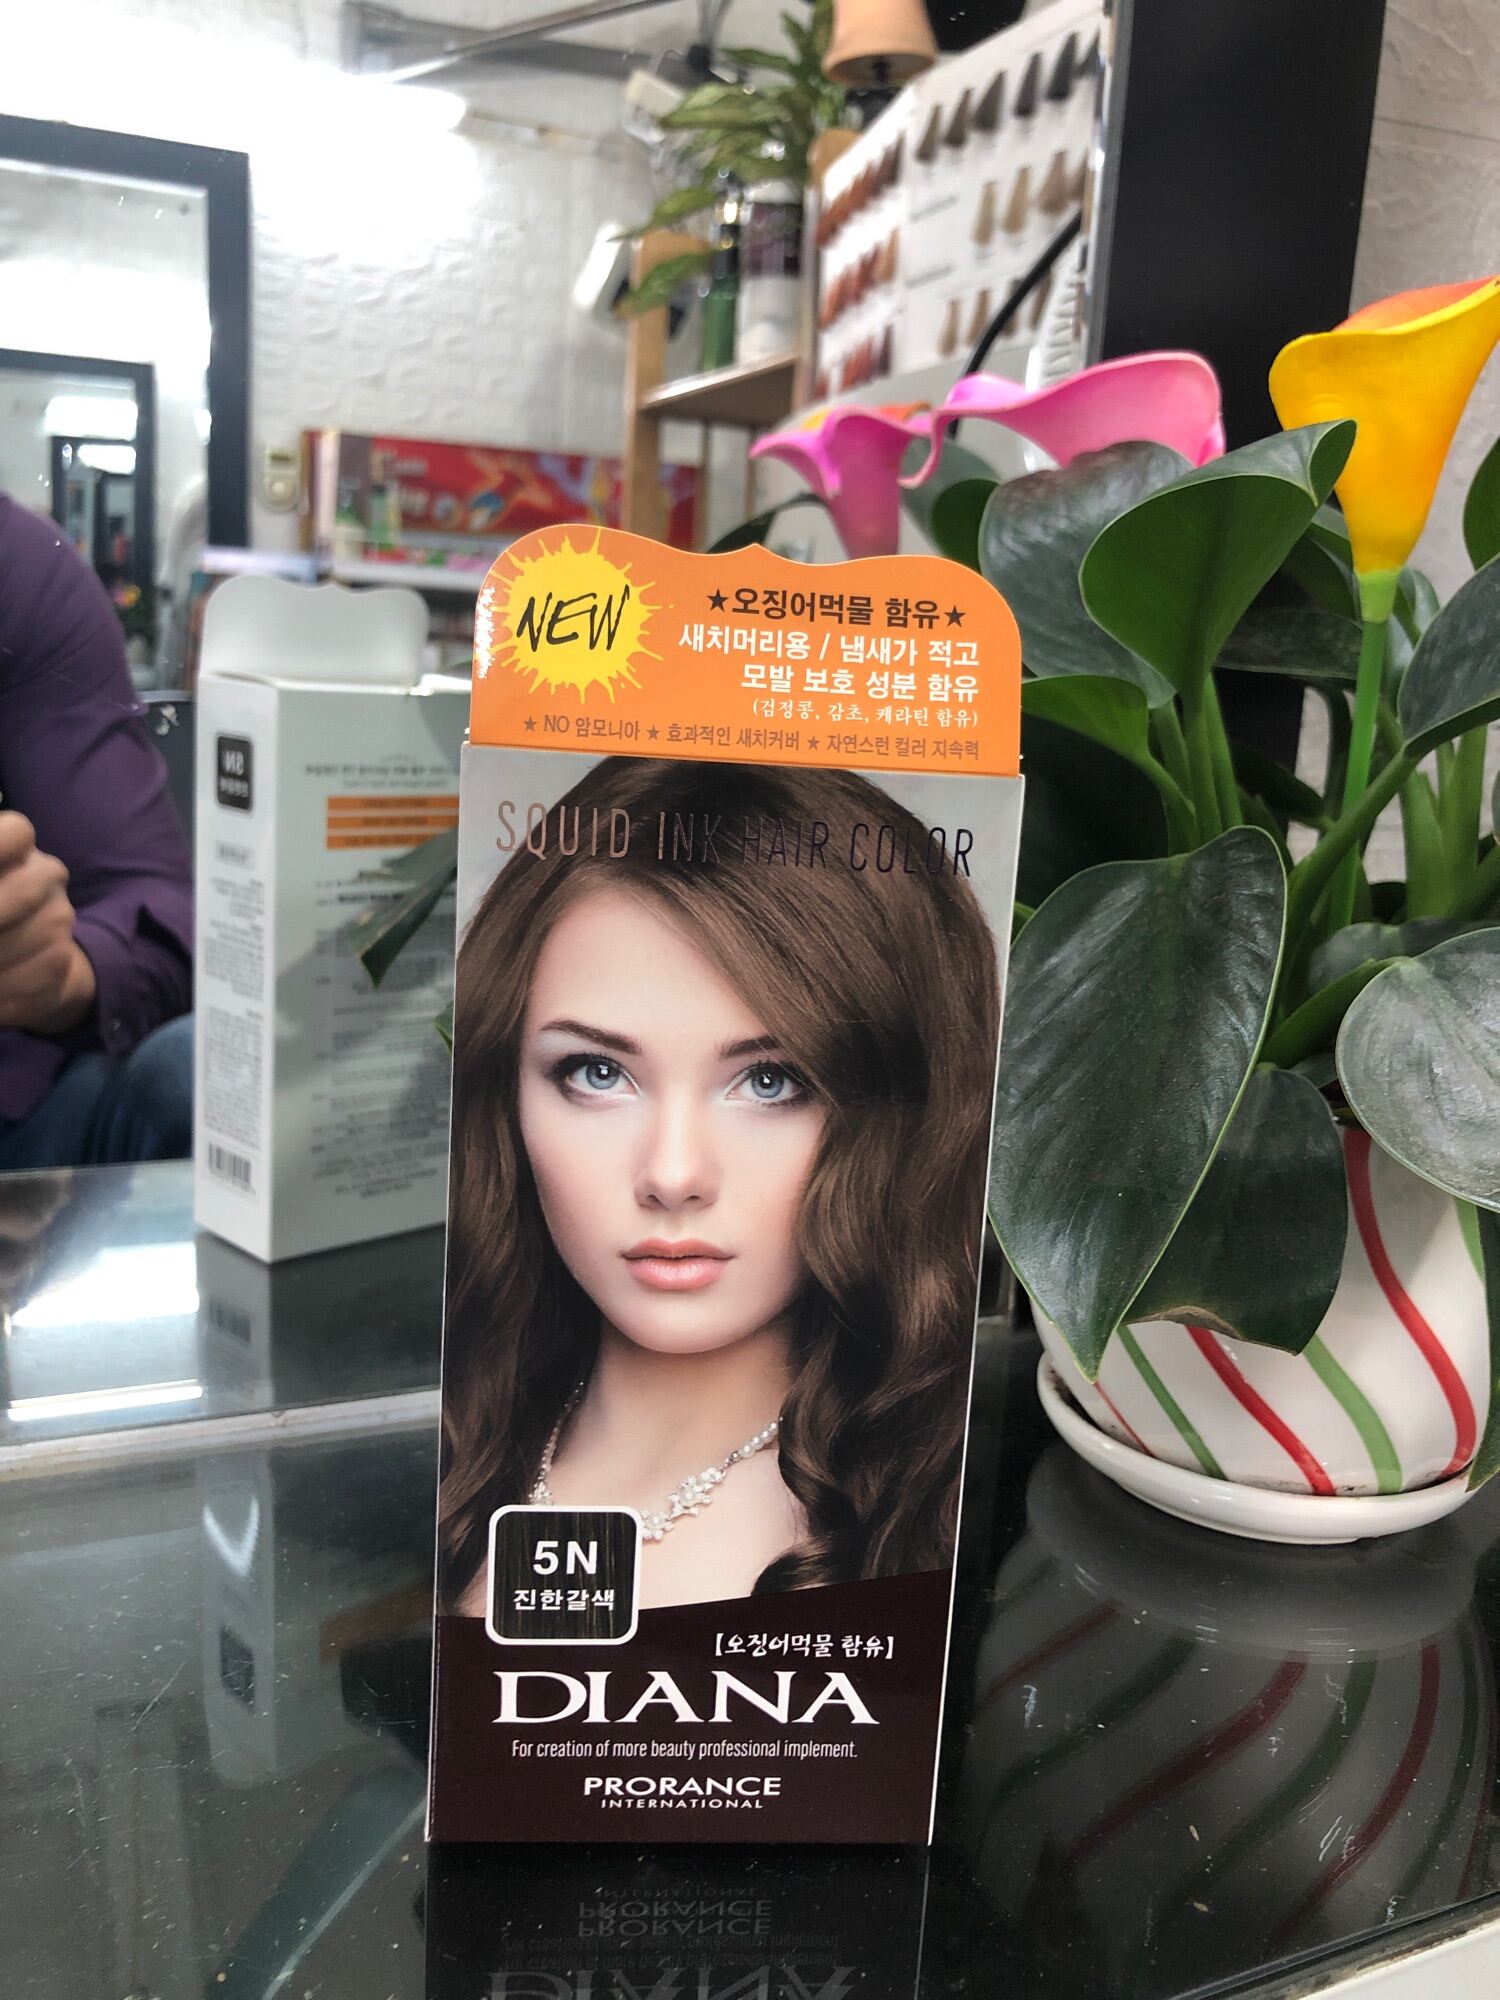 Bảng màu thuốc nhuộm tóc Hàn Quốc: Khám phá những gam màu thuốc tóc đẹp nhất từ Hàn Quốc với bảng màu nhuộm tóc đa dạng và chất lượng tuyệt vời. Sản phẩm không chỉ giúp bạn có mái tóc đẹp, mà còn bảo vệ sức khỏe và độ bóng cho mái tóc của bạn.